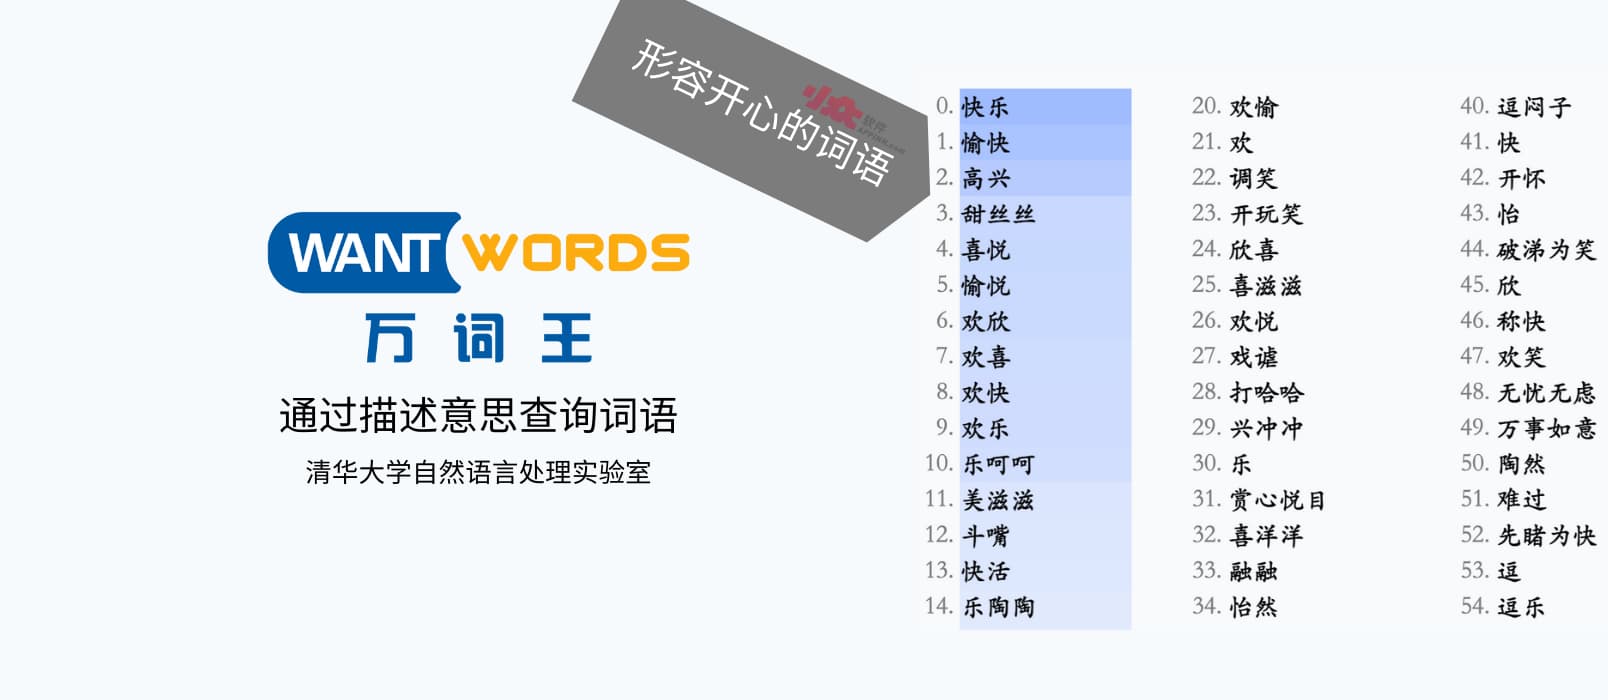 万词王 - 清华大学发布开源在线反向词典，通过描述意思来查询 100 个近义词